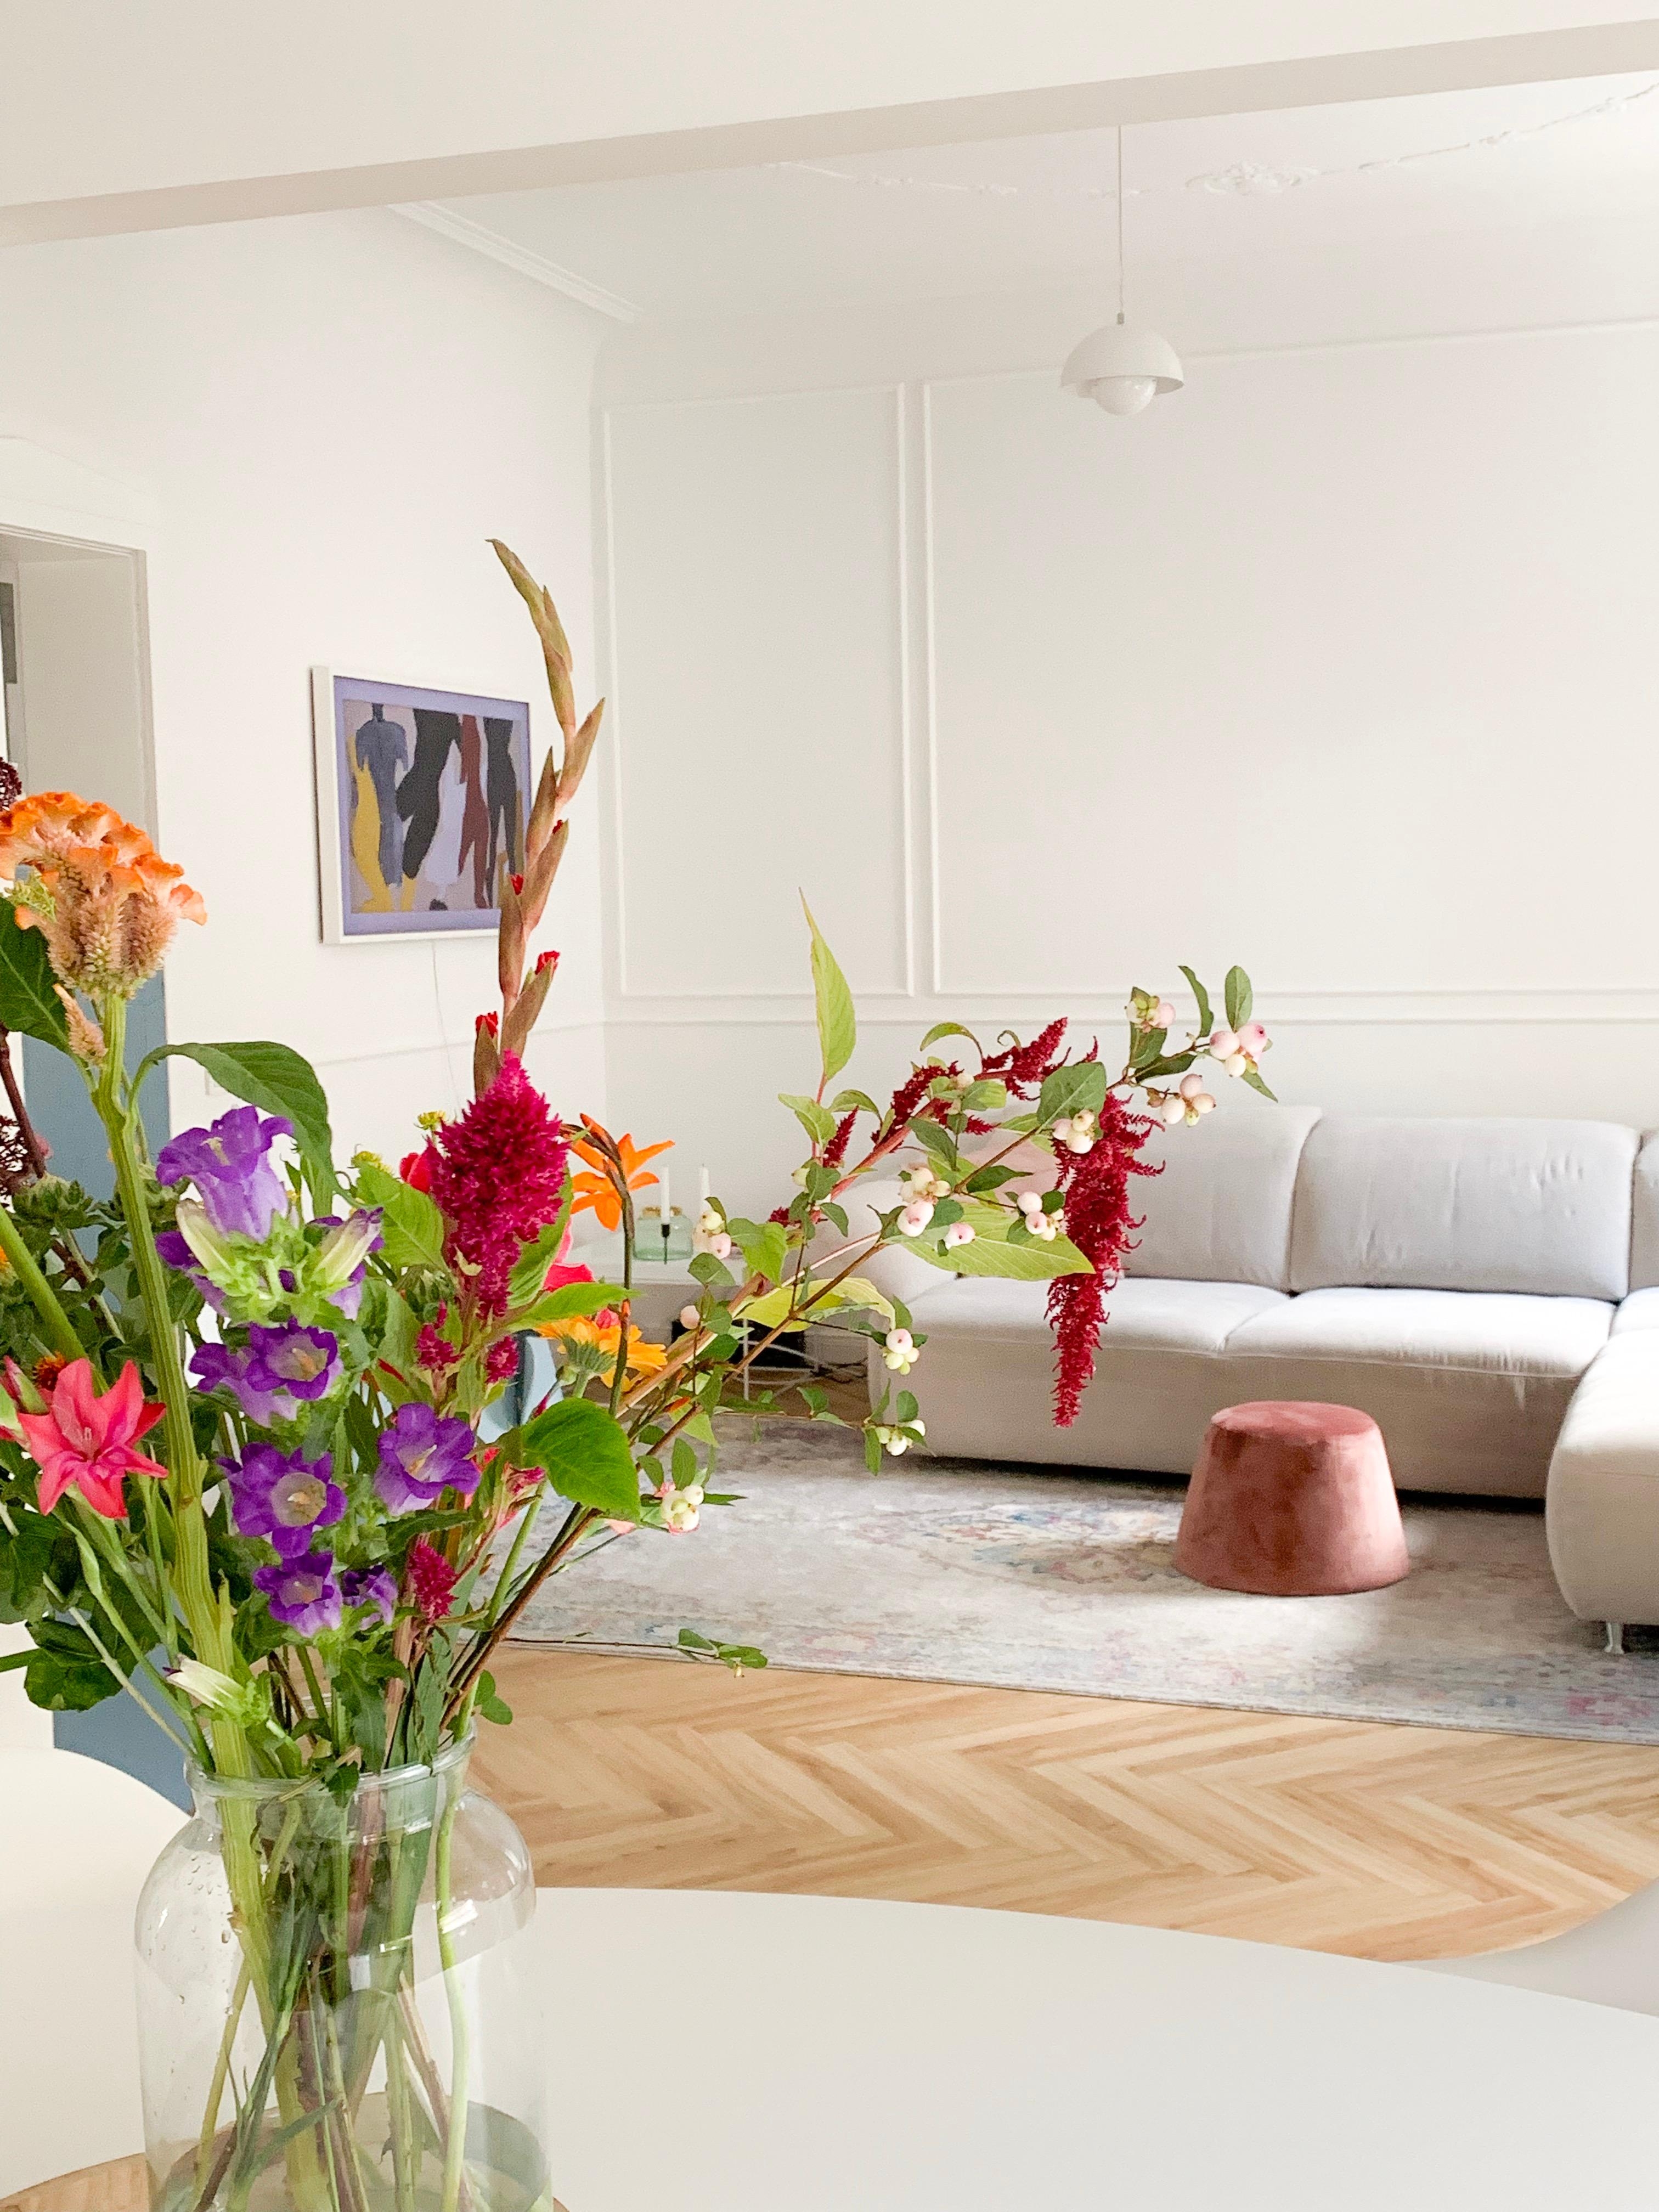 Die selbstangebrachten Stuckleisten  verleihen dem Raum so viel Gemütlichkeit #livingchallenge #wohnzimmergestaltung